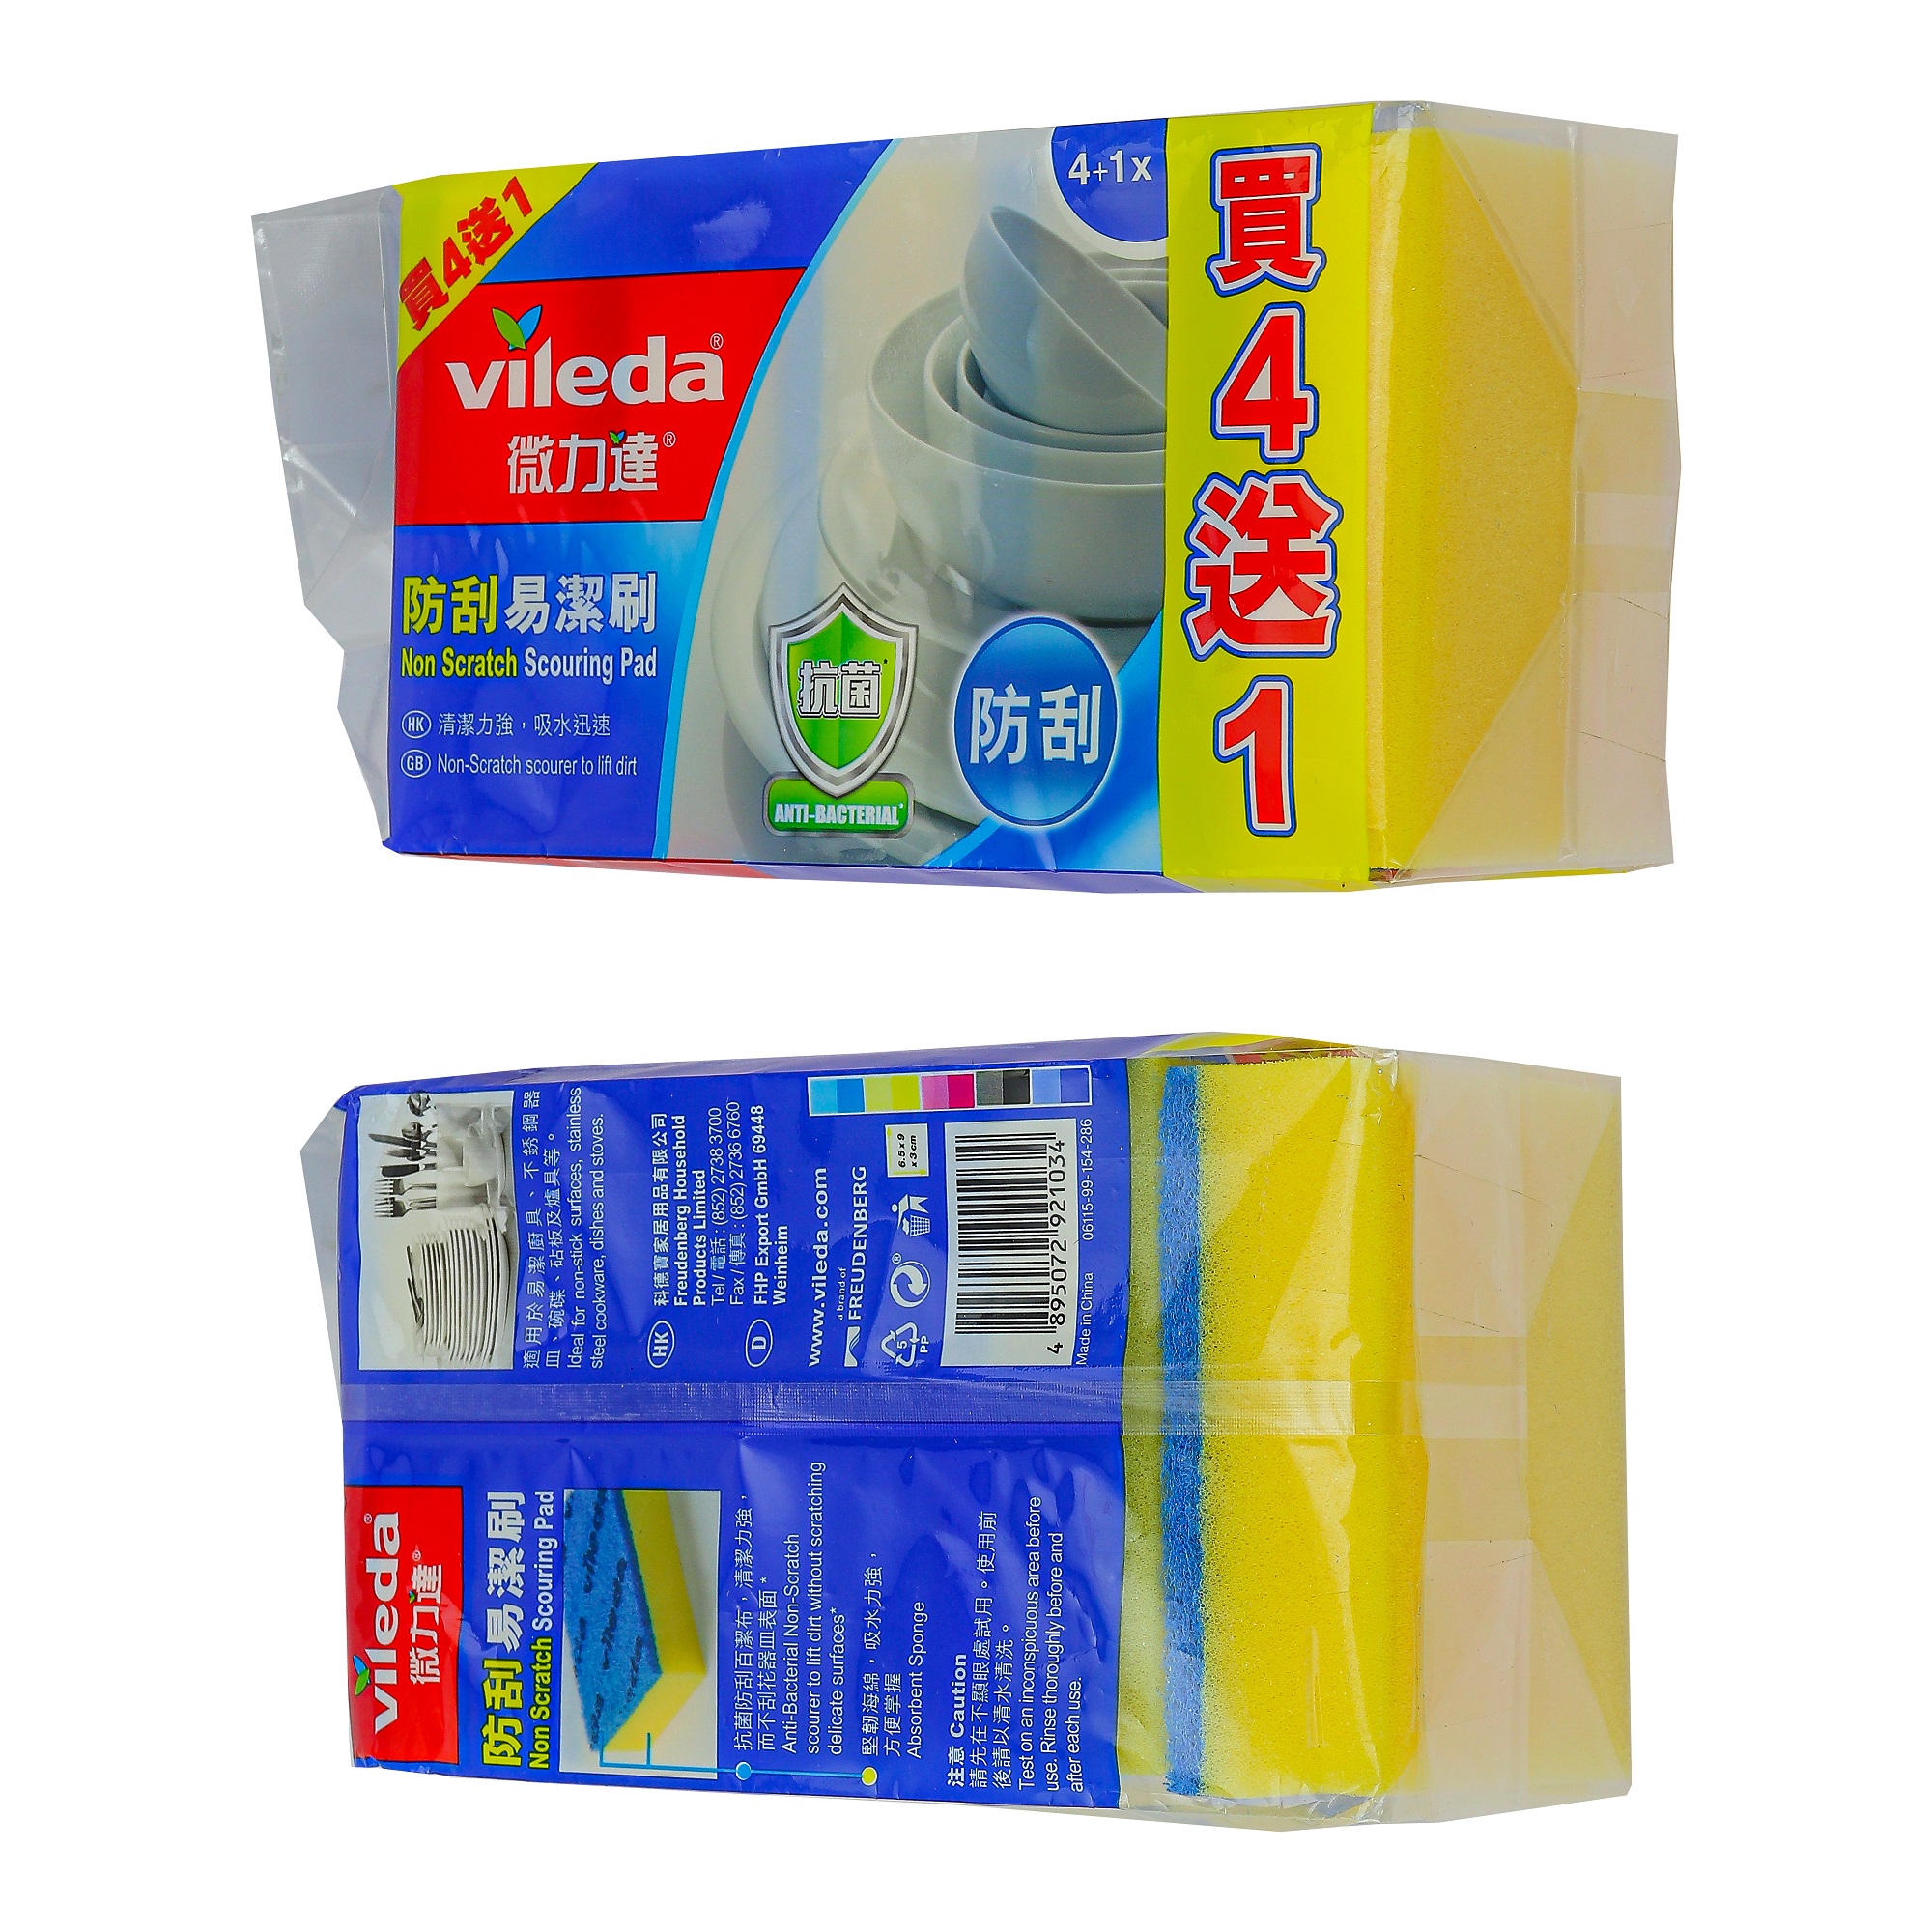 Miếng rửa chén chống xước VILEDA loại có mút, gói 5 miếng - TSU156160